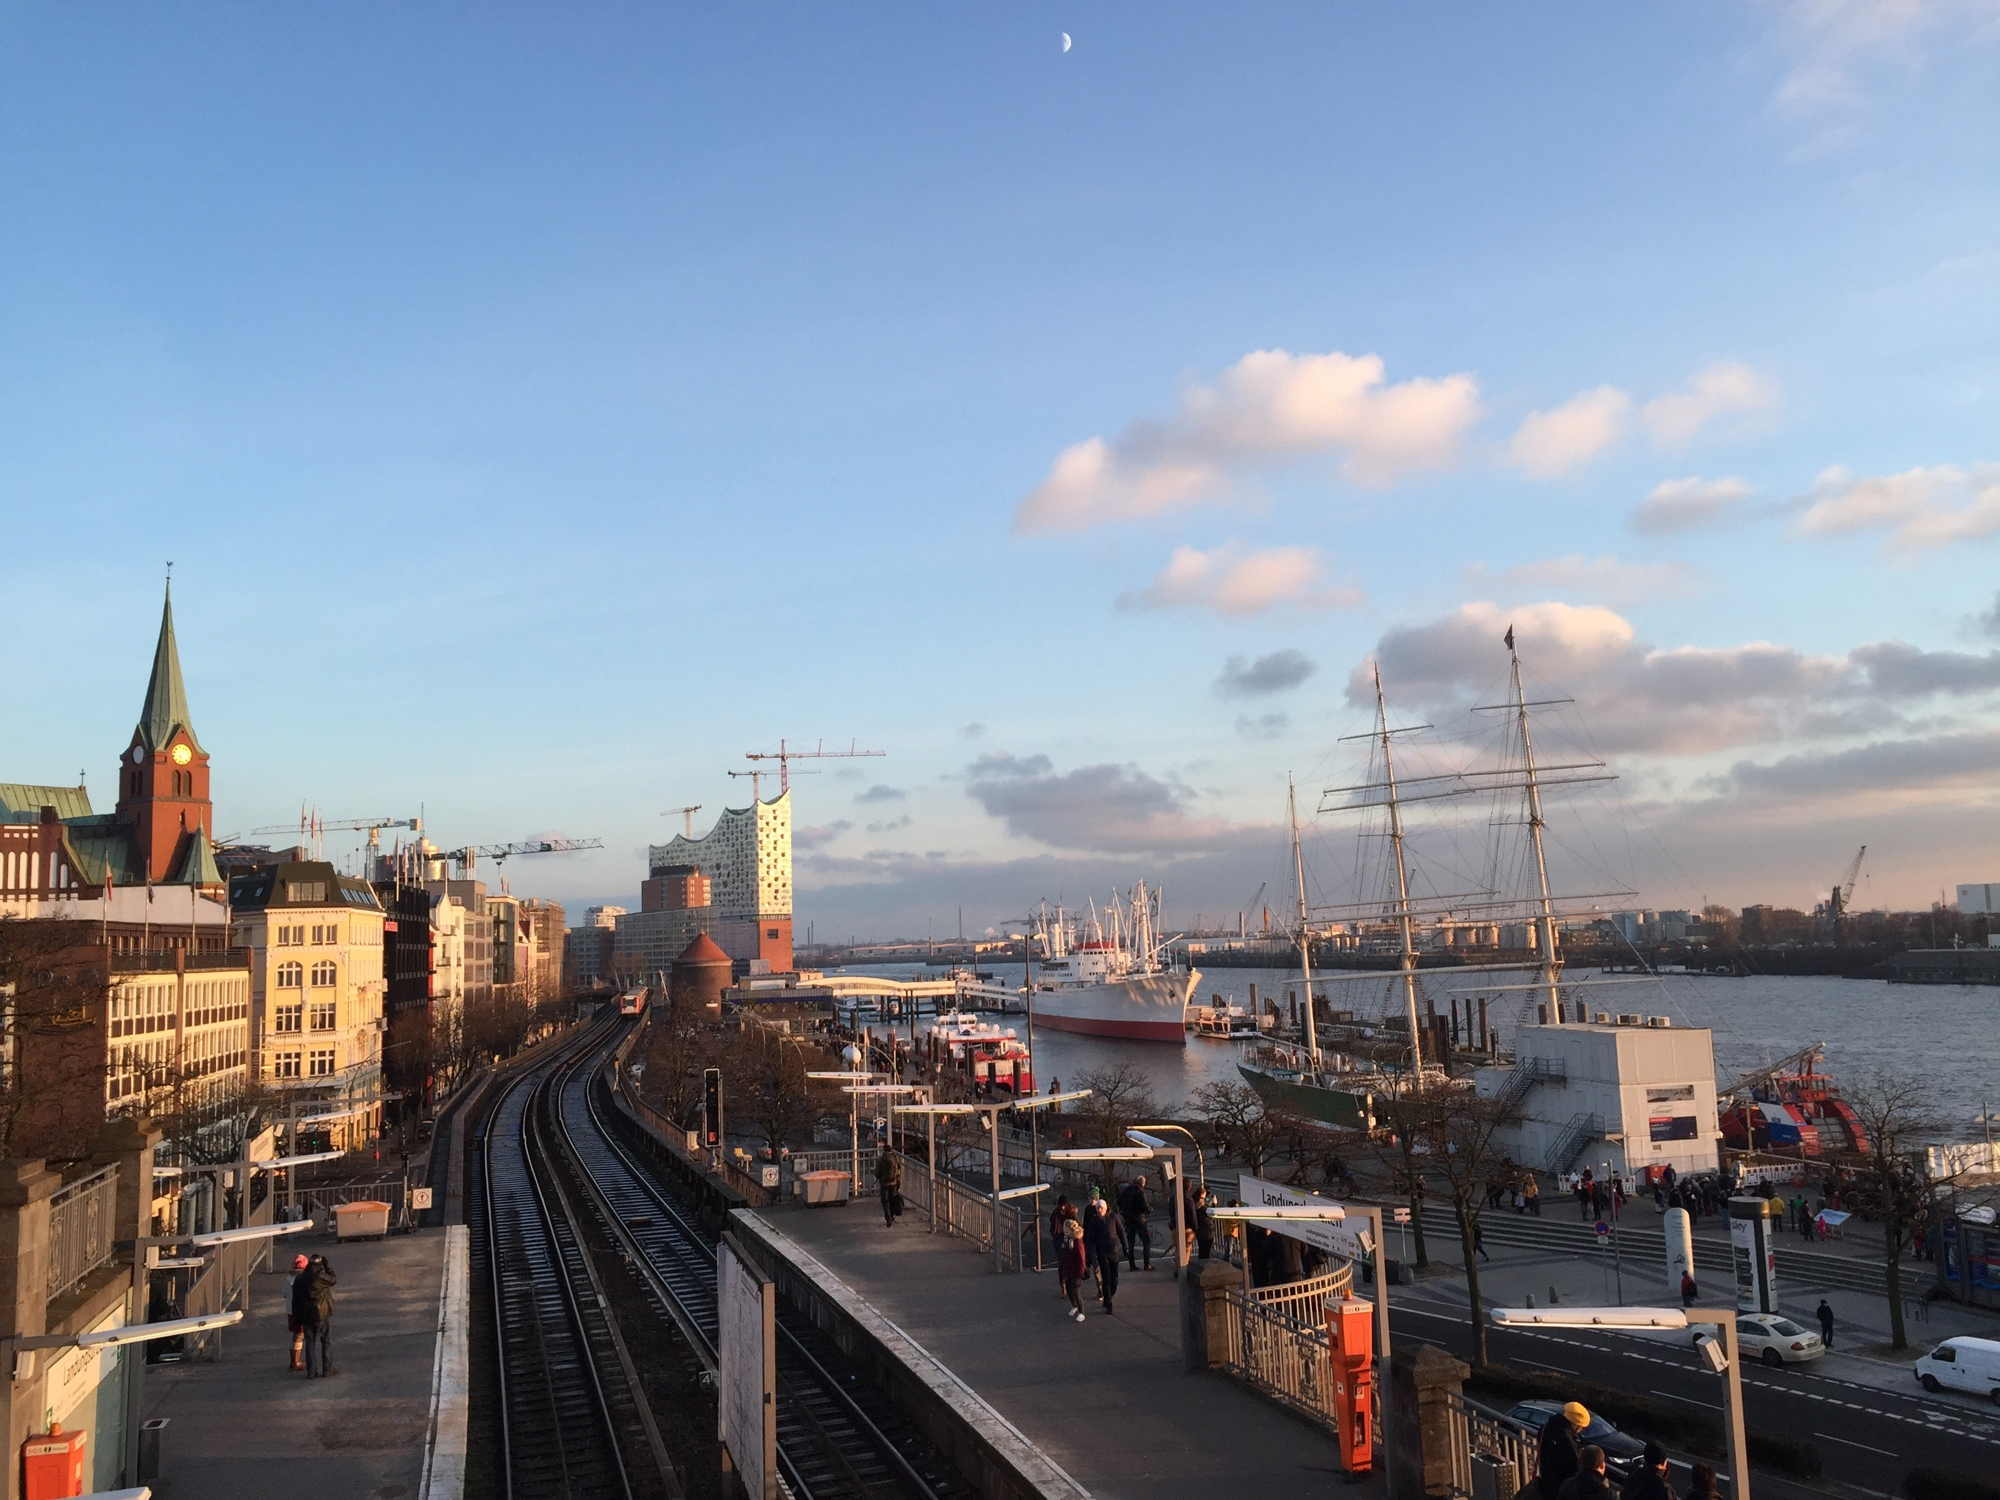 Blick von der Aussichtsplattform Stintfang über den Hafen mit U-Bahn-Gleis, Elbphilharmonie und Mondsichel am Himmel